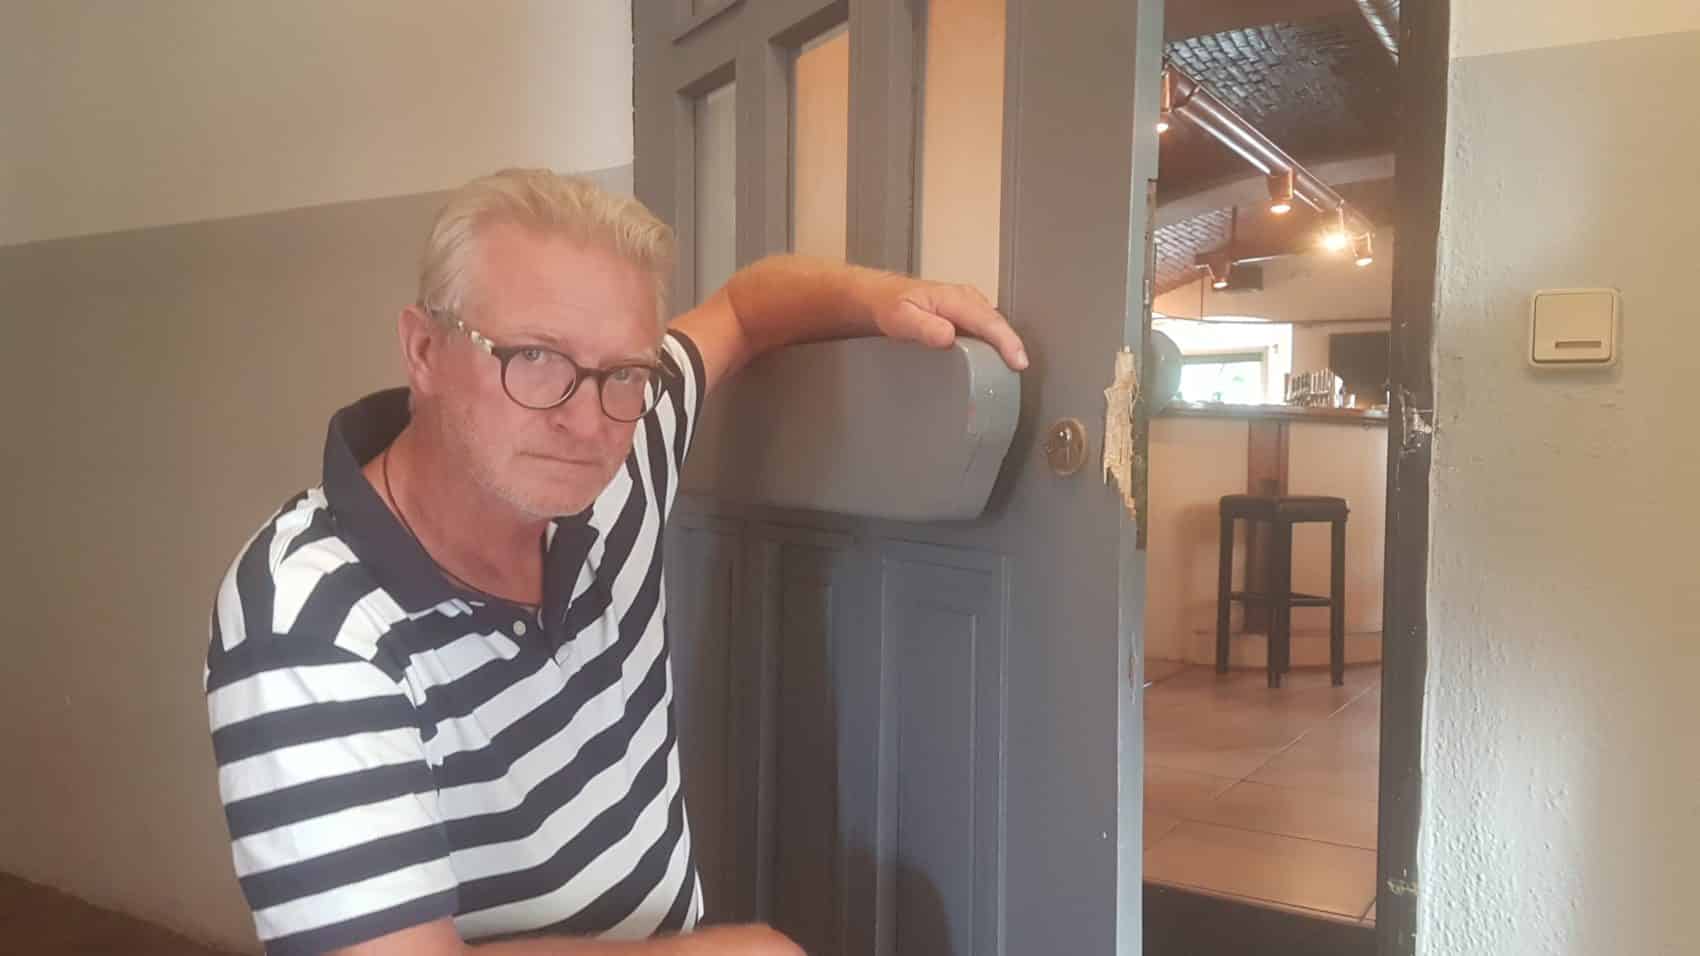 Der Betreiber des Cafes Hendrikus van den Broek ärgert sich über den Einbruch, sperrt sein Lokal jedoch heute ganz normal auf.